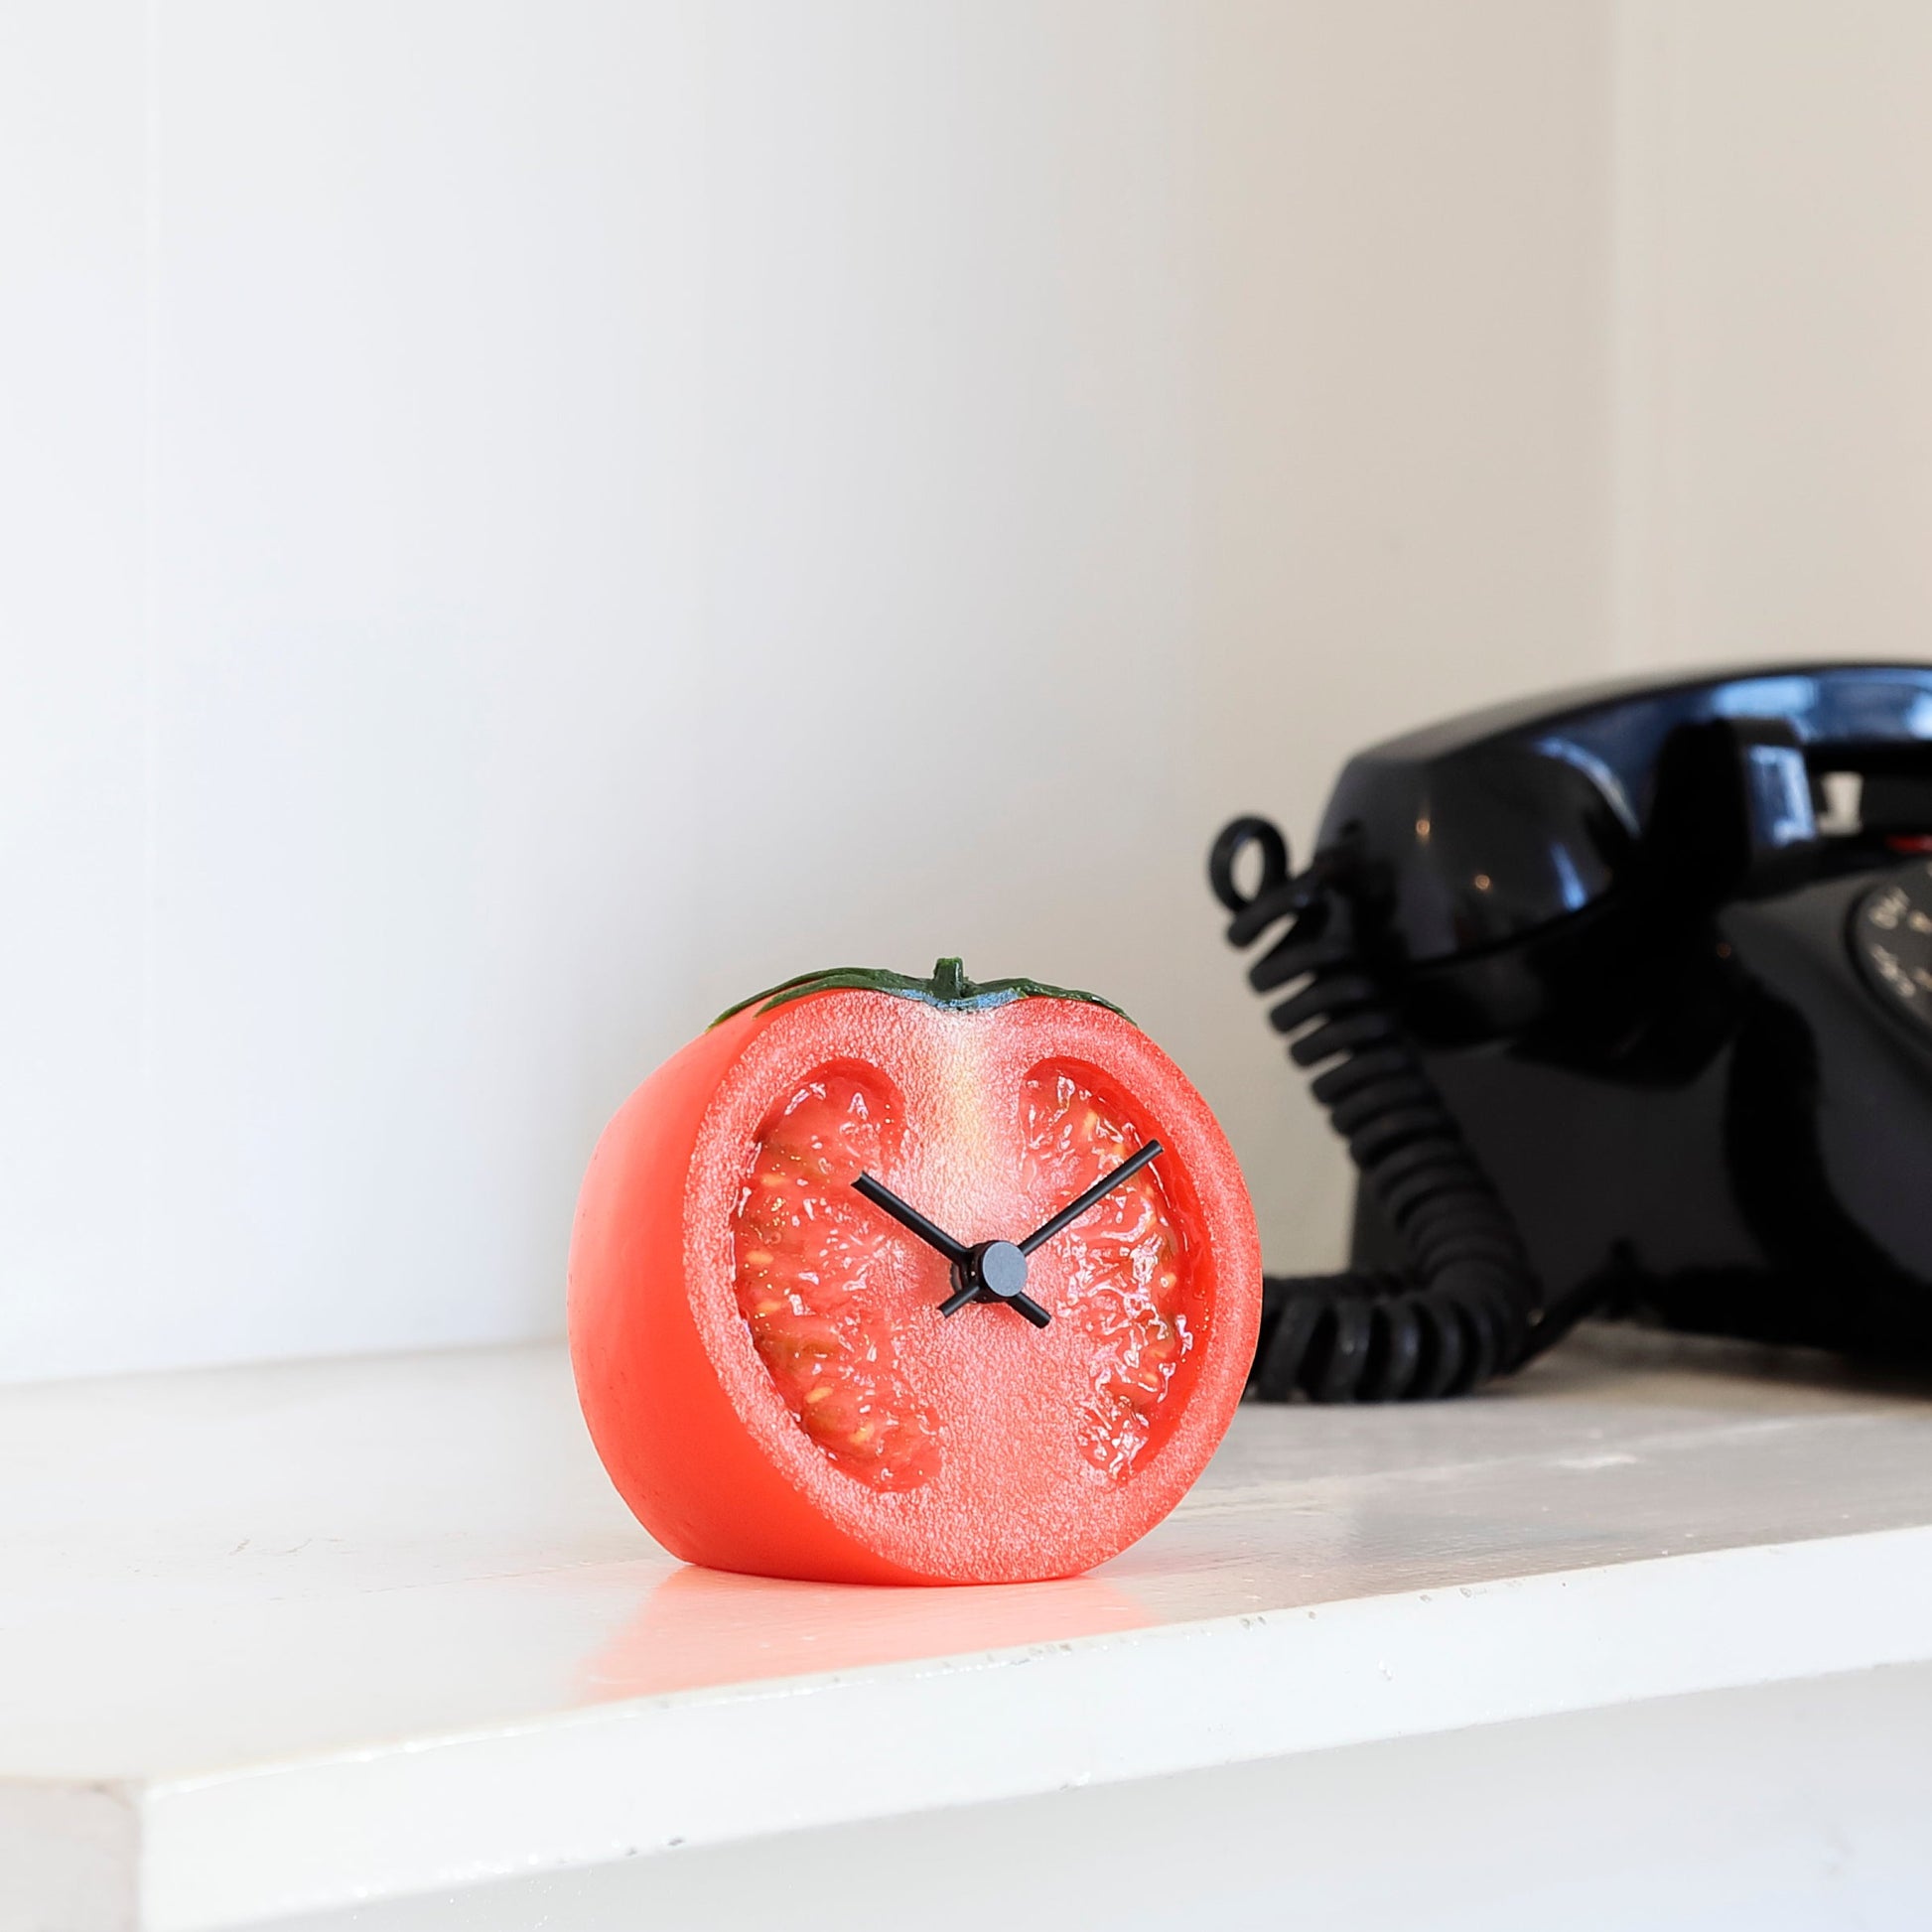 これは元祖食品サンプル屋「Replica Food Clock  トマト」の部屋に置いたイメージ写真です。